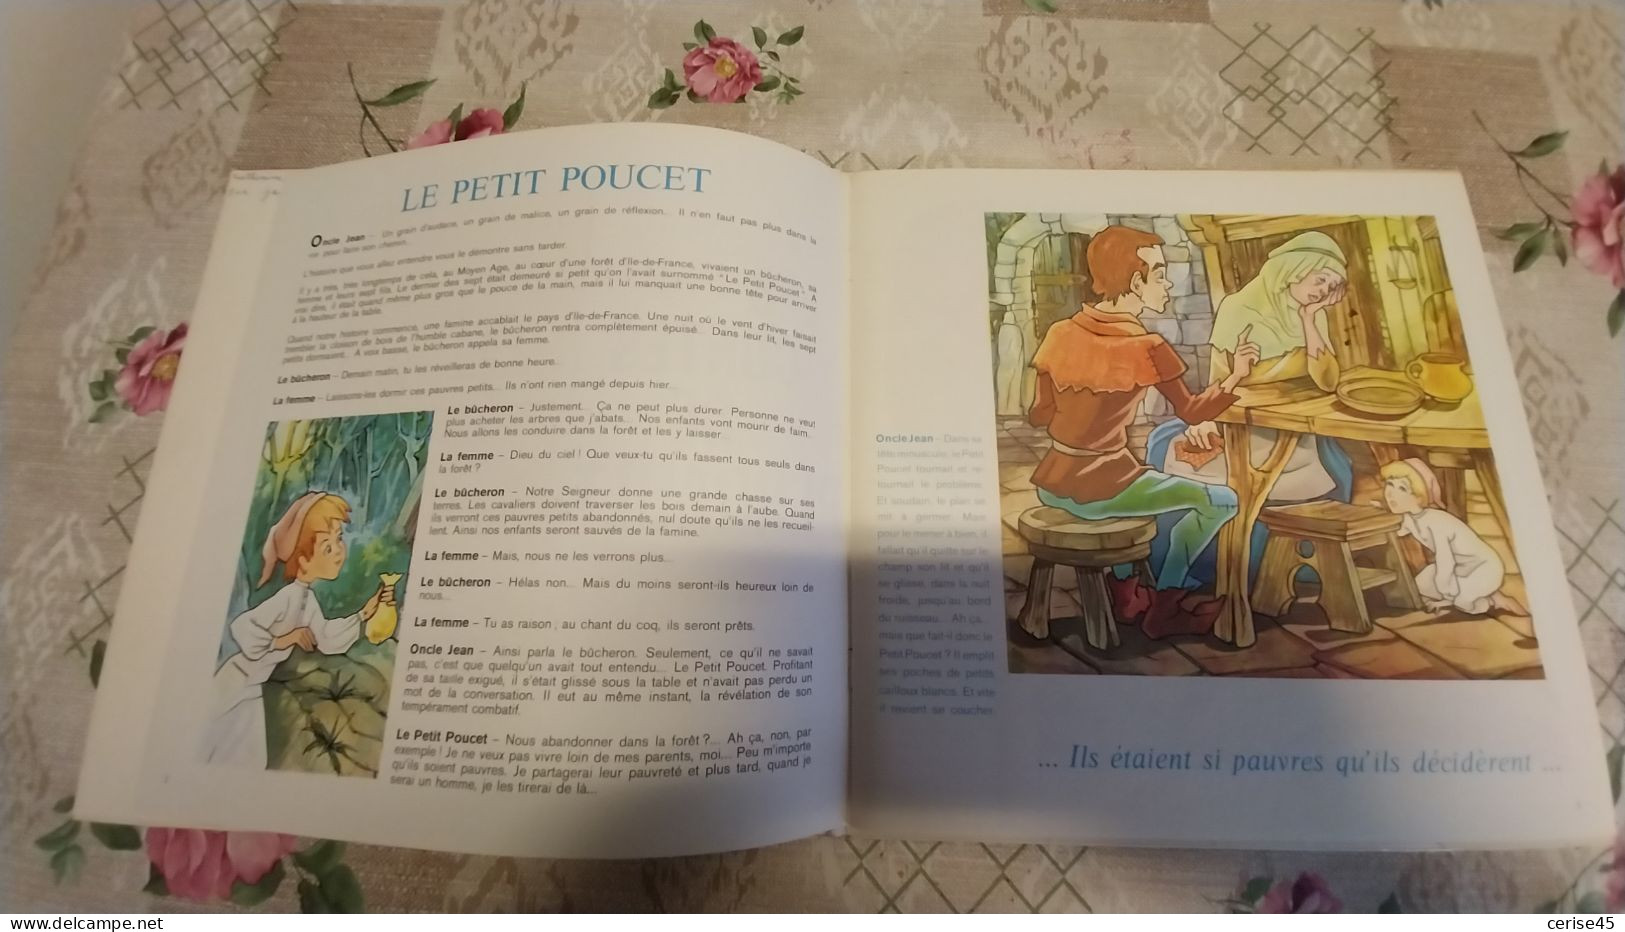 DISQUE 25 CM..livre Disque Le Petit Menestrel..le Petit Poucet ..peau D 'ane Volume 3 - Speciale Formaten